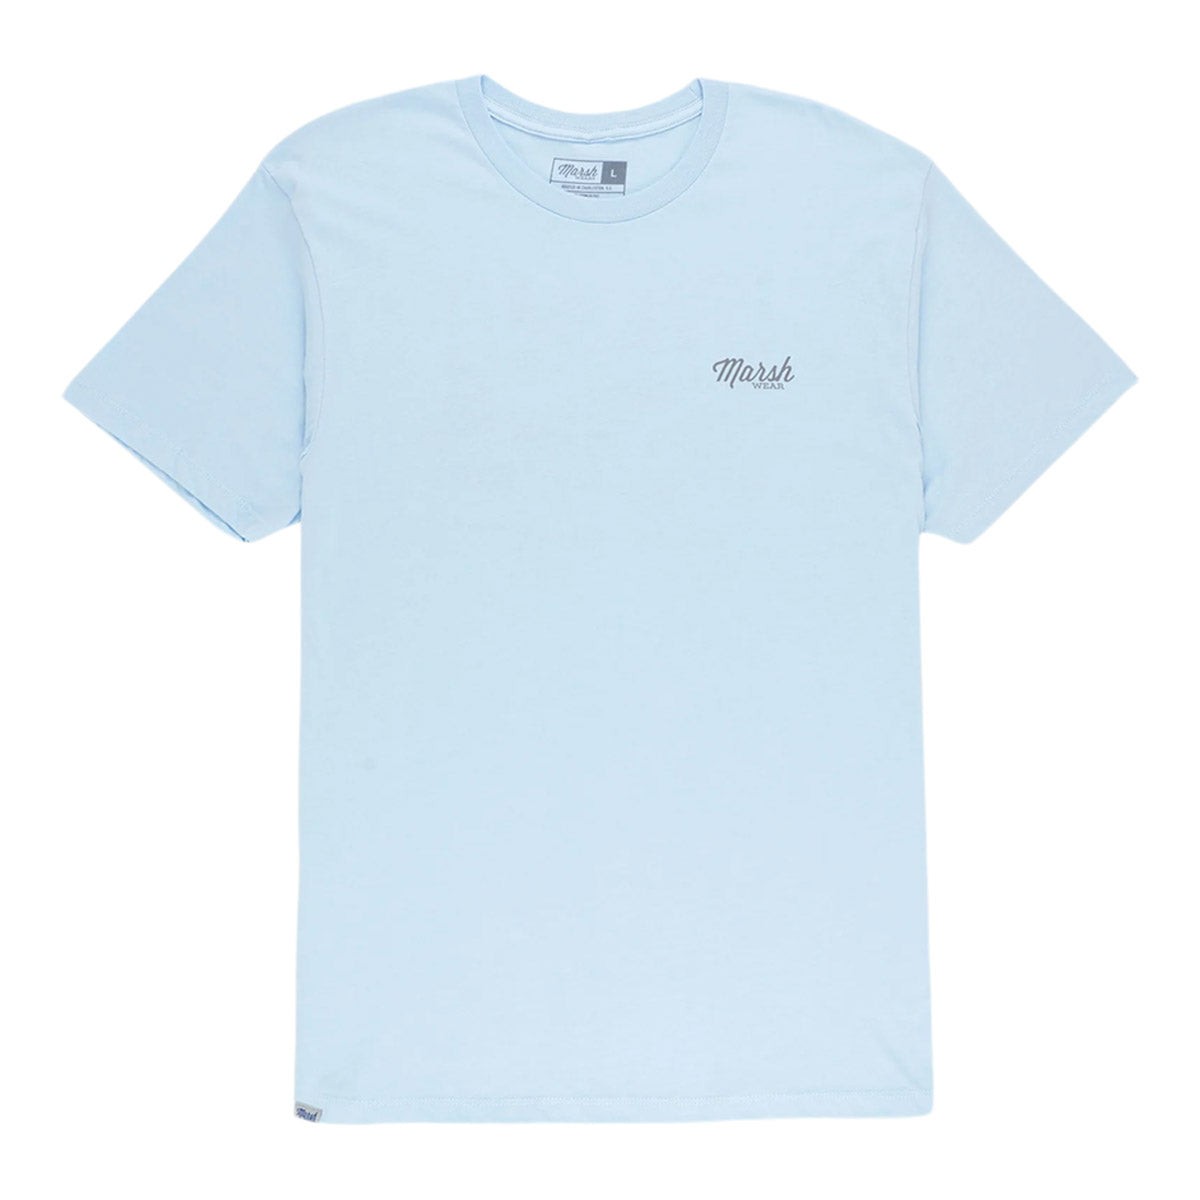 Marsh Wear Live Bait Short Sleeve T-Shirt